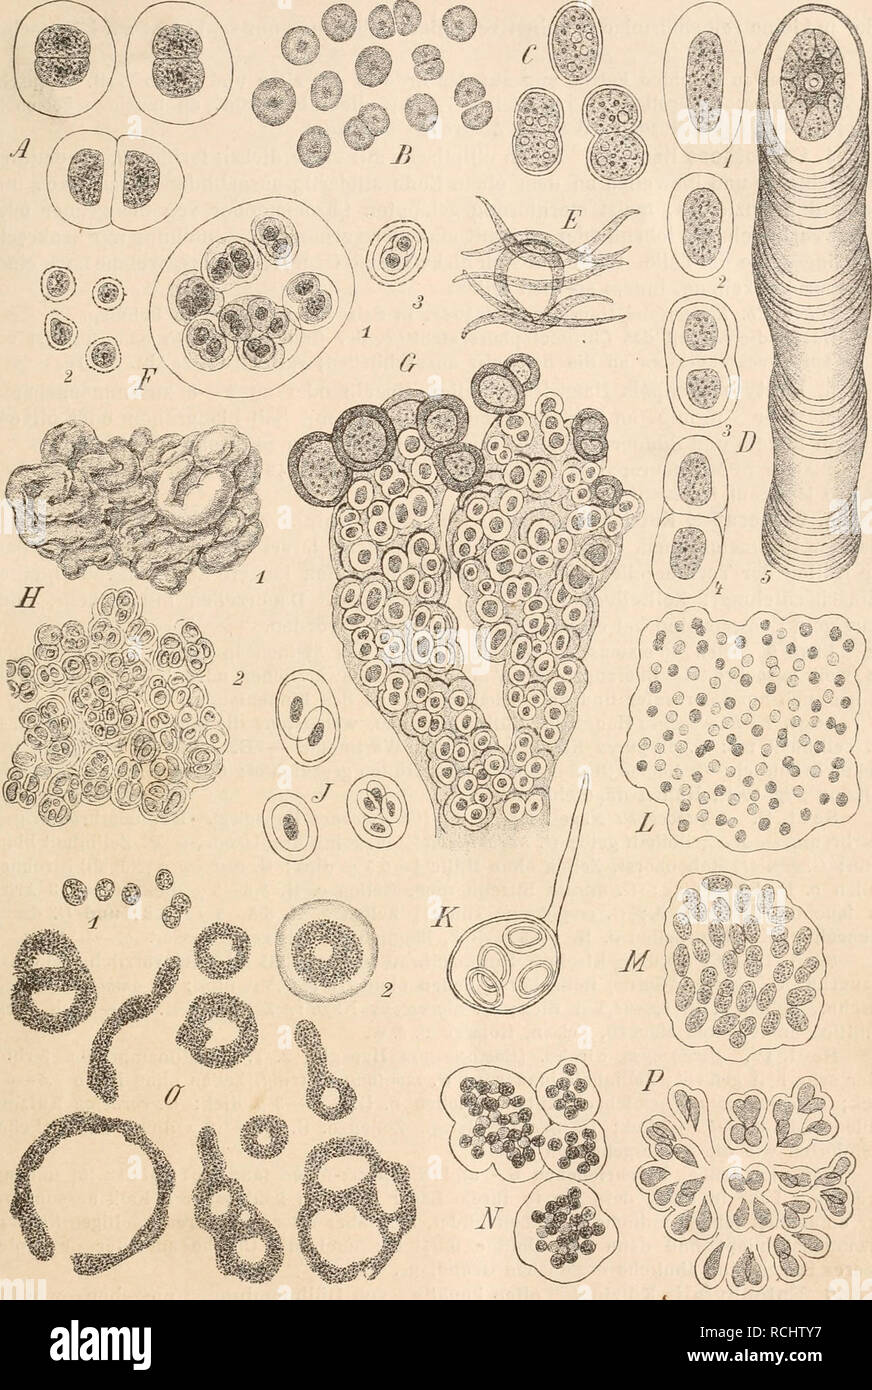 . Die Natürlichen Pflanzenfamilien nebst ihren Gattungen und wichtigeren Arten, insbesondere den Nutzpflanzen, unter Mitwirkung zahlreicher hervorragender Fachgelehrten begründet. Botany. Chroococcaceae. (Kirchner.) 53. Fig. 49. A Chroococcus turgidlis Näg. (575|1). — B Synechocystis aquatilis Sauv. (1000/1). — C Syuechococcns airu- ginosus Näg. (575/1). — D C'hrootlicce RichterianaH.a.nsg. (575/1). — E Dactylococcopsis rhaphidioides Hansg. ('2000/1).— F Gloeocapaa sanguinea Kütz., 1 vegetative Familie, 2 Dauerzellen, 3 Keimungszustand einer Dauerzelle (575/1). — G Entophysalis granulosa Kütz. Stock Photo